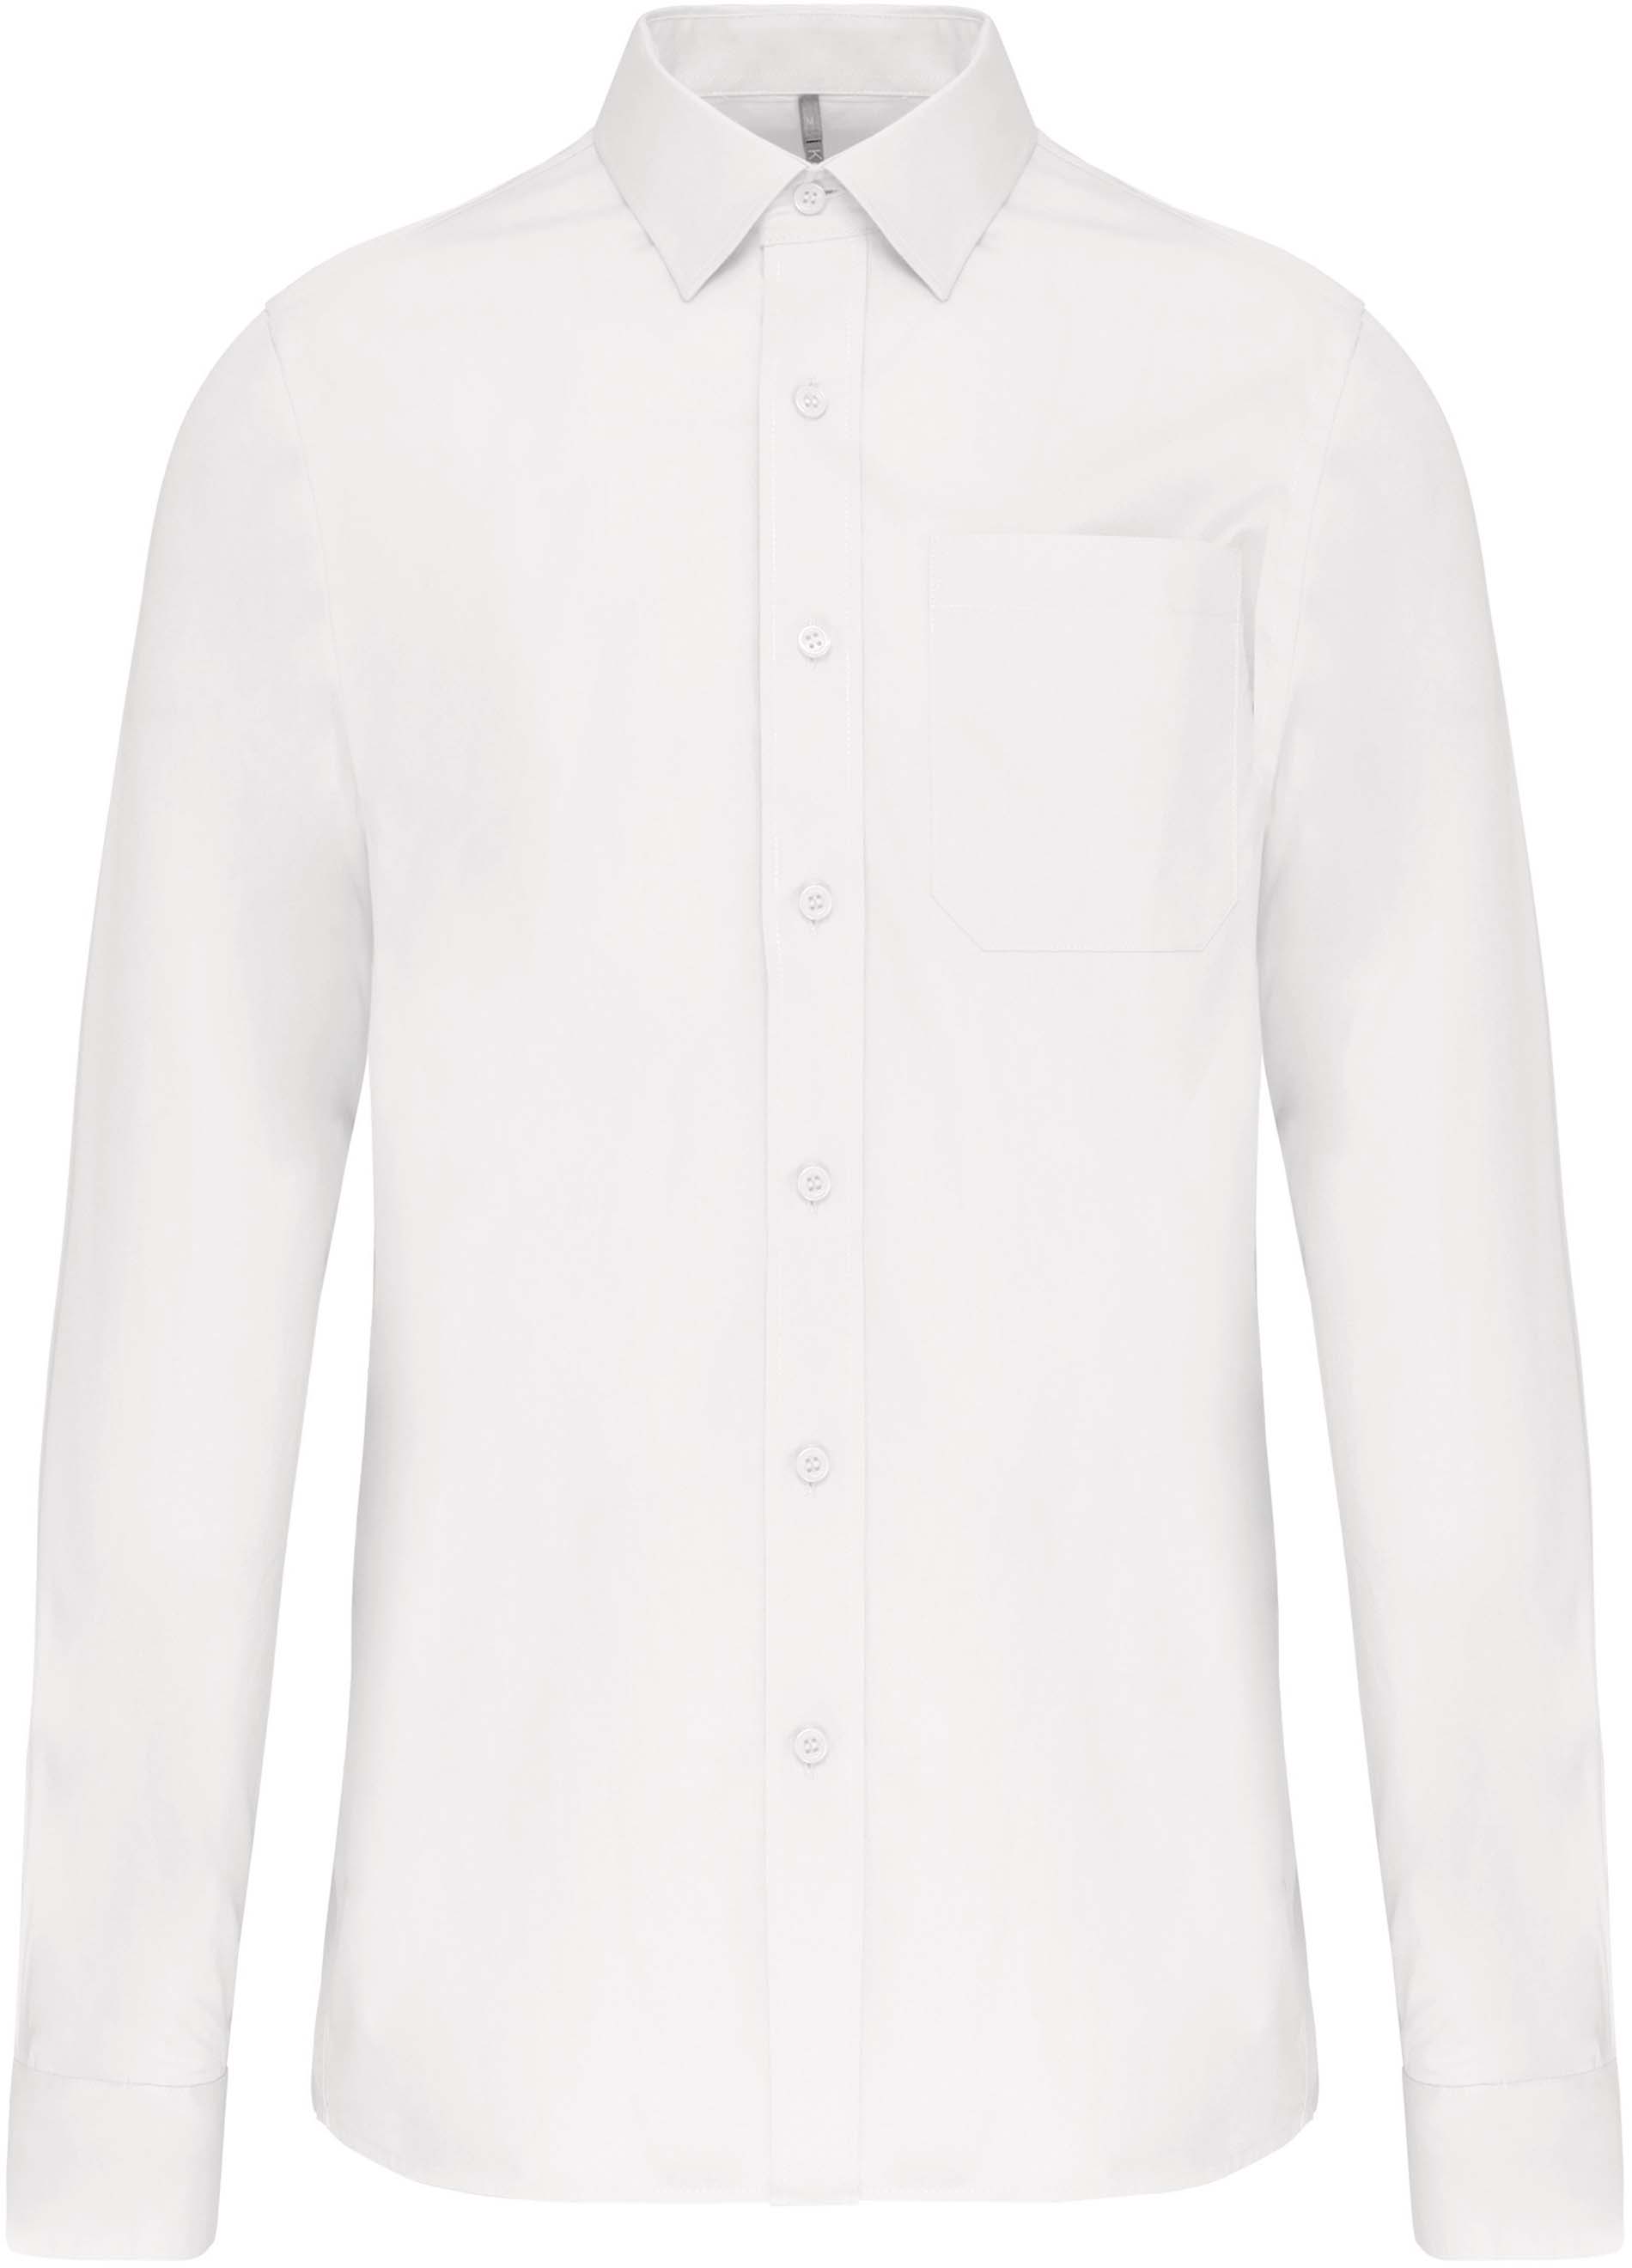 Pánská košile s dlouhým rukávem Barva: bílá, Velikost: XL